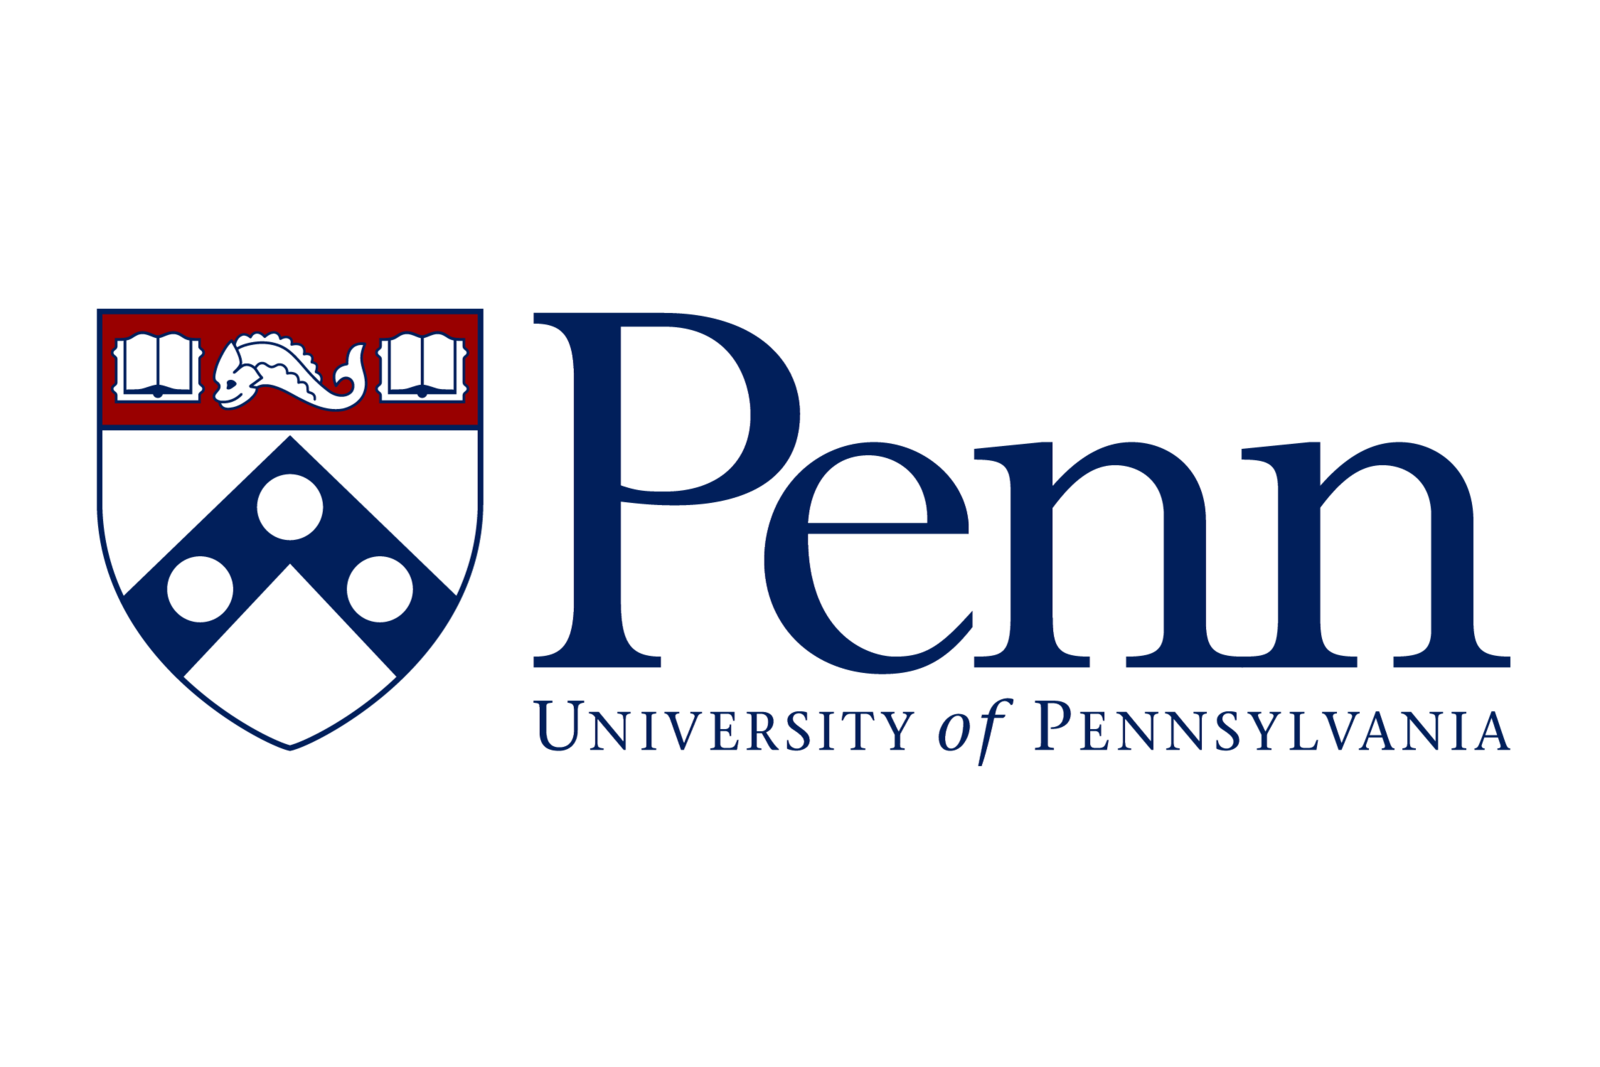 University of Penn